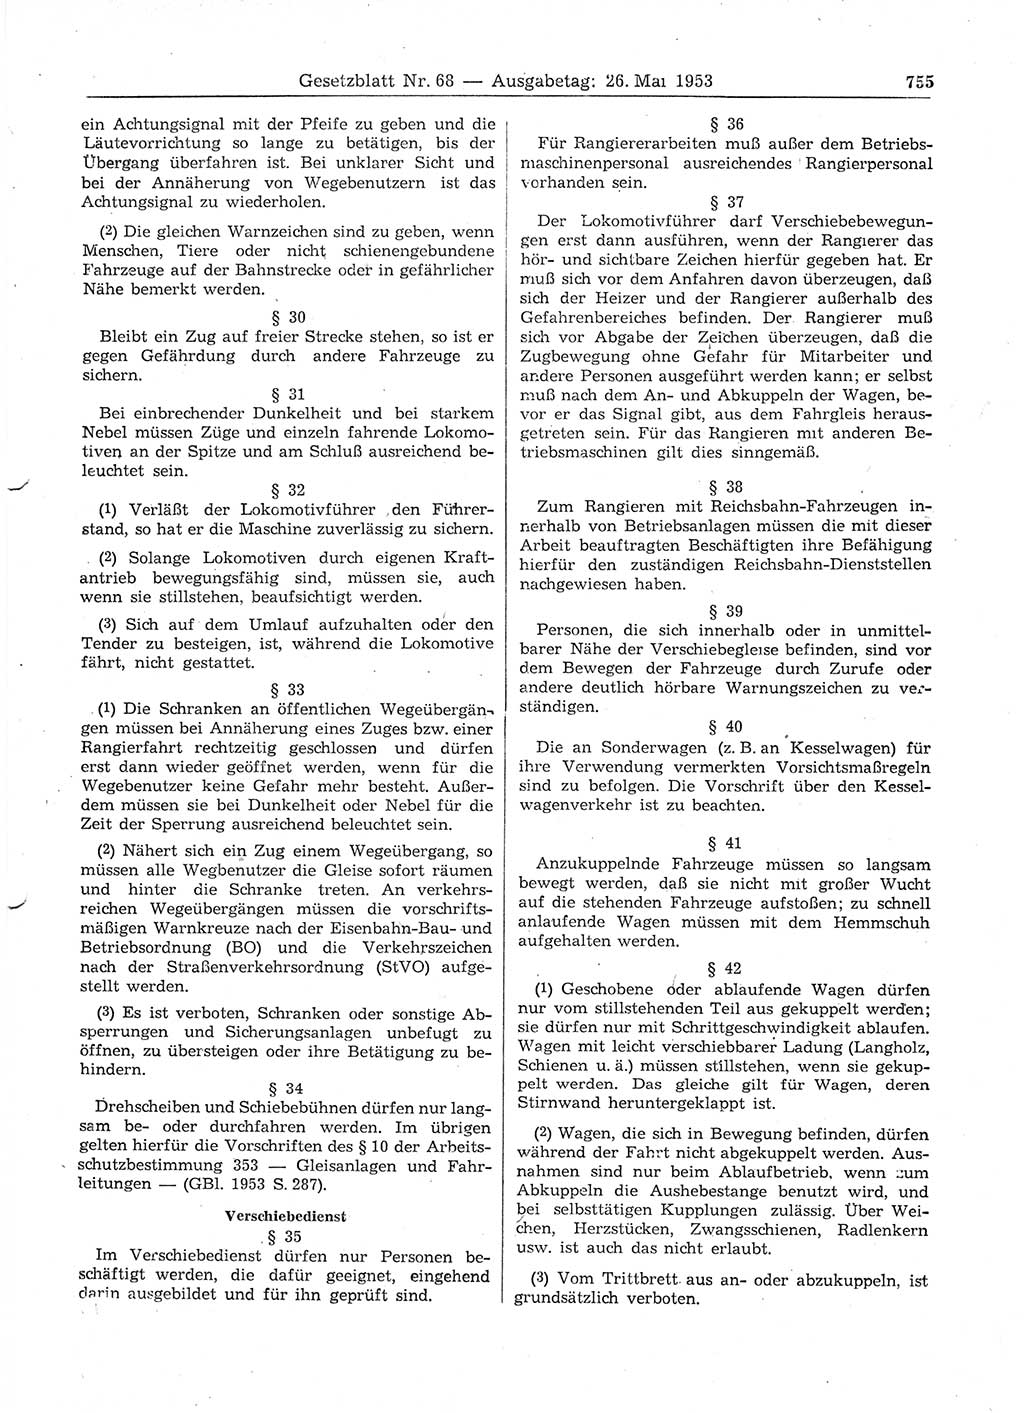 Gesetzblatt (GBl.) der Deutschen Demokratischen Republik (DDR) 1953, Seite 755 (GBl. DDR 1953, S. 755)